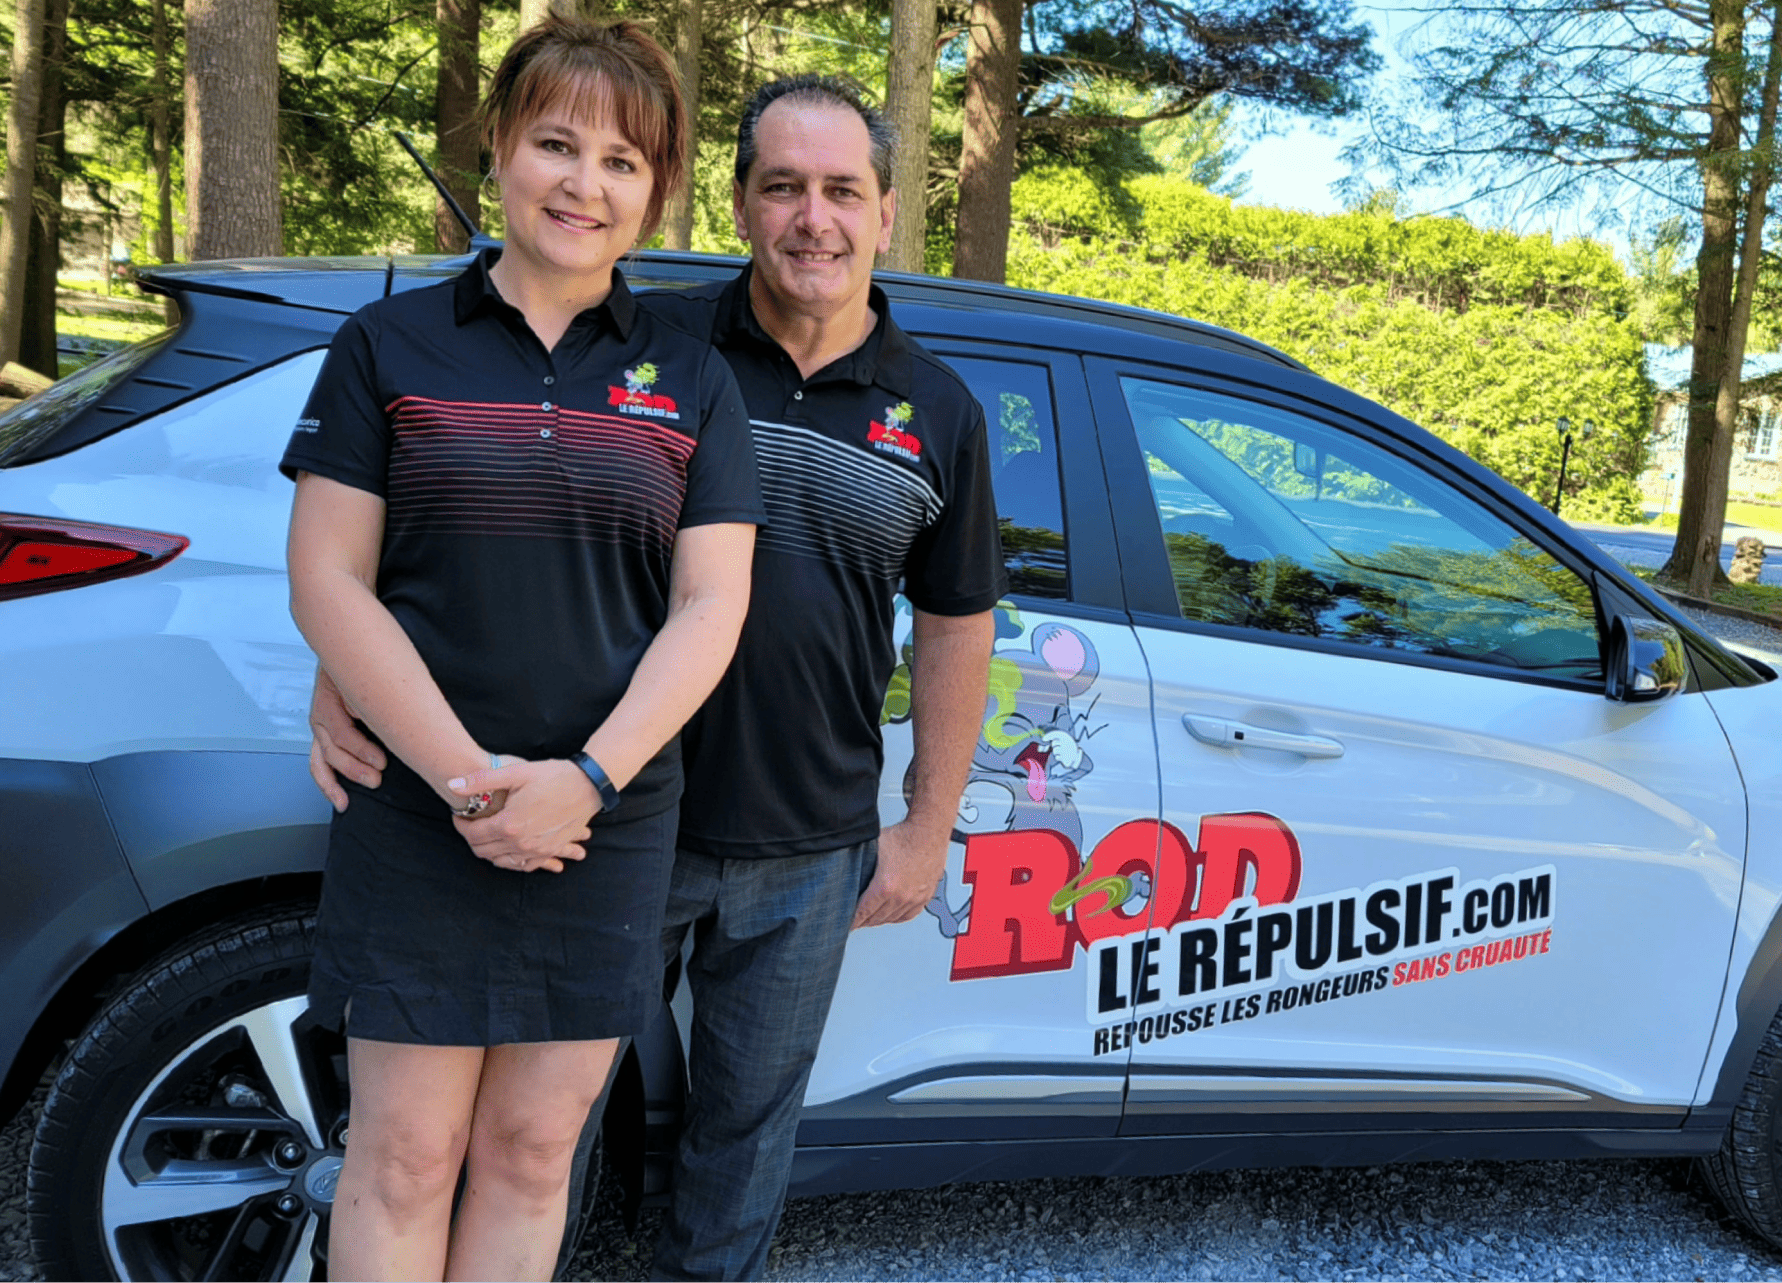 Benoit Legault et sa partenaire se tiennent devant une voiture à hayon dont les portes affichent une publicité de Rod le répulsif